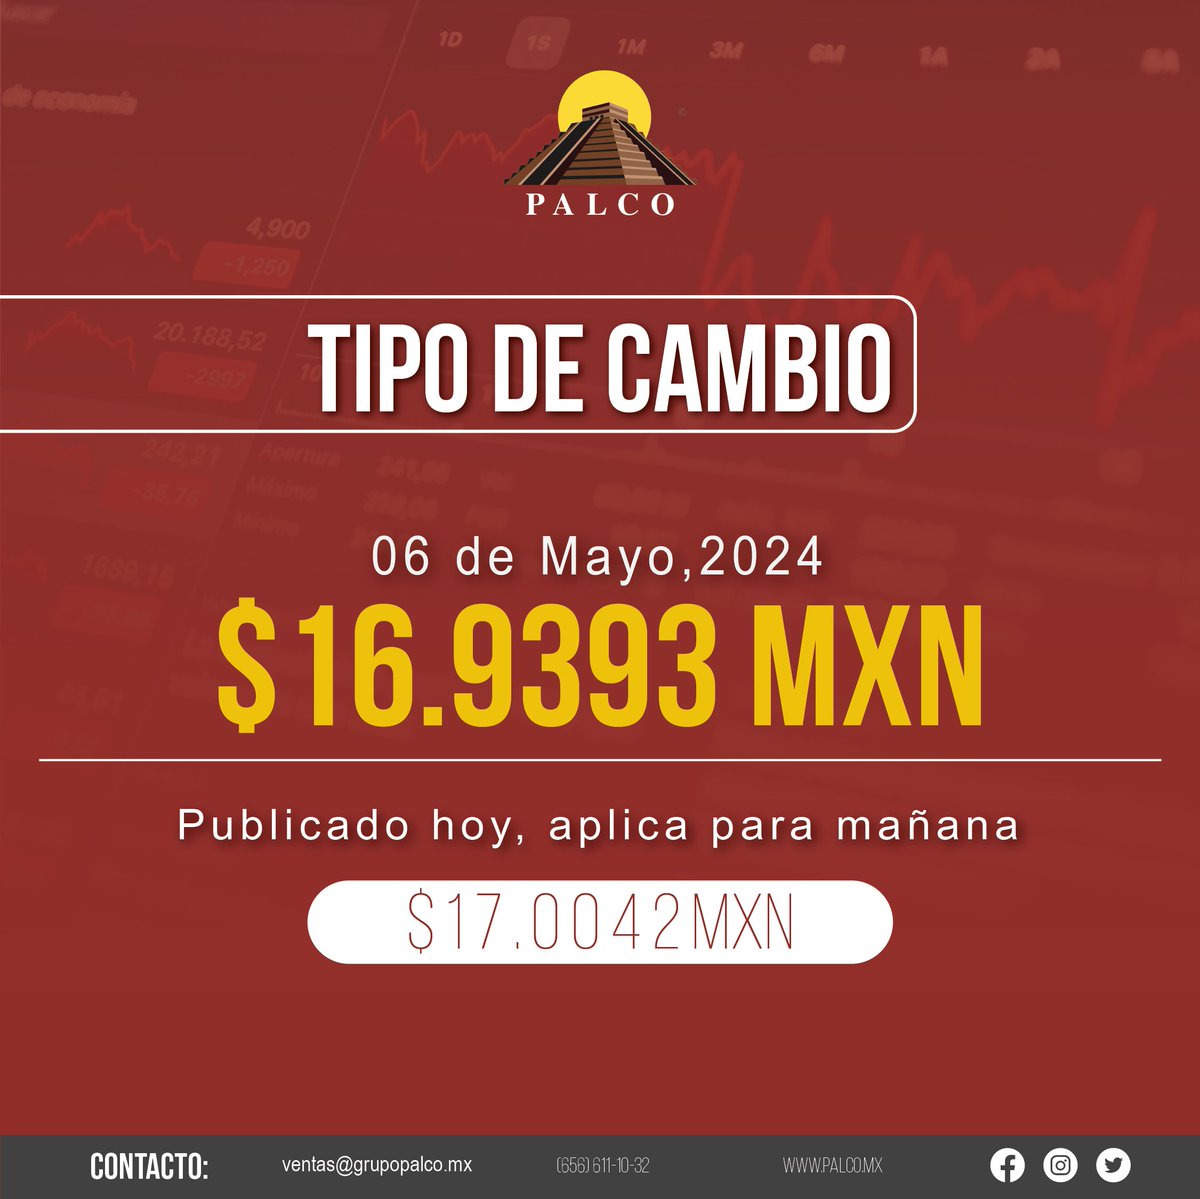 Hoy Lunes 6 de Mayo, 2024 el tipo de cambio es:
#TipoDeCambio #grupopalco #AgenciaAduanal